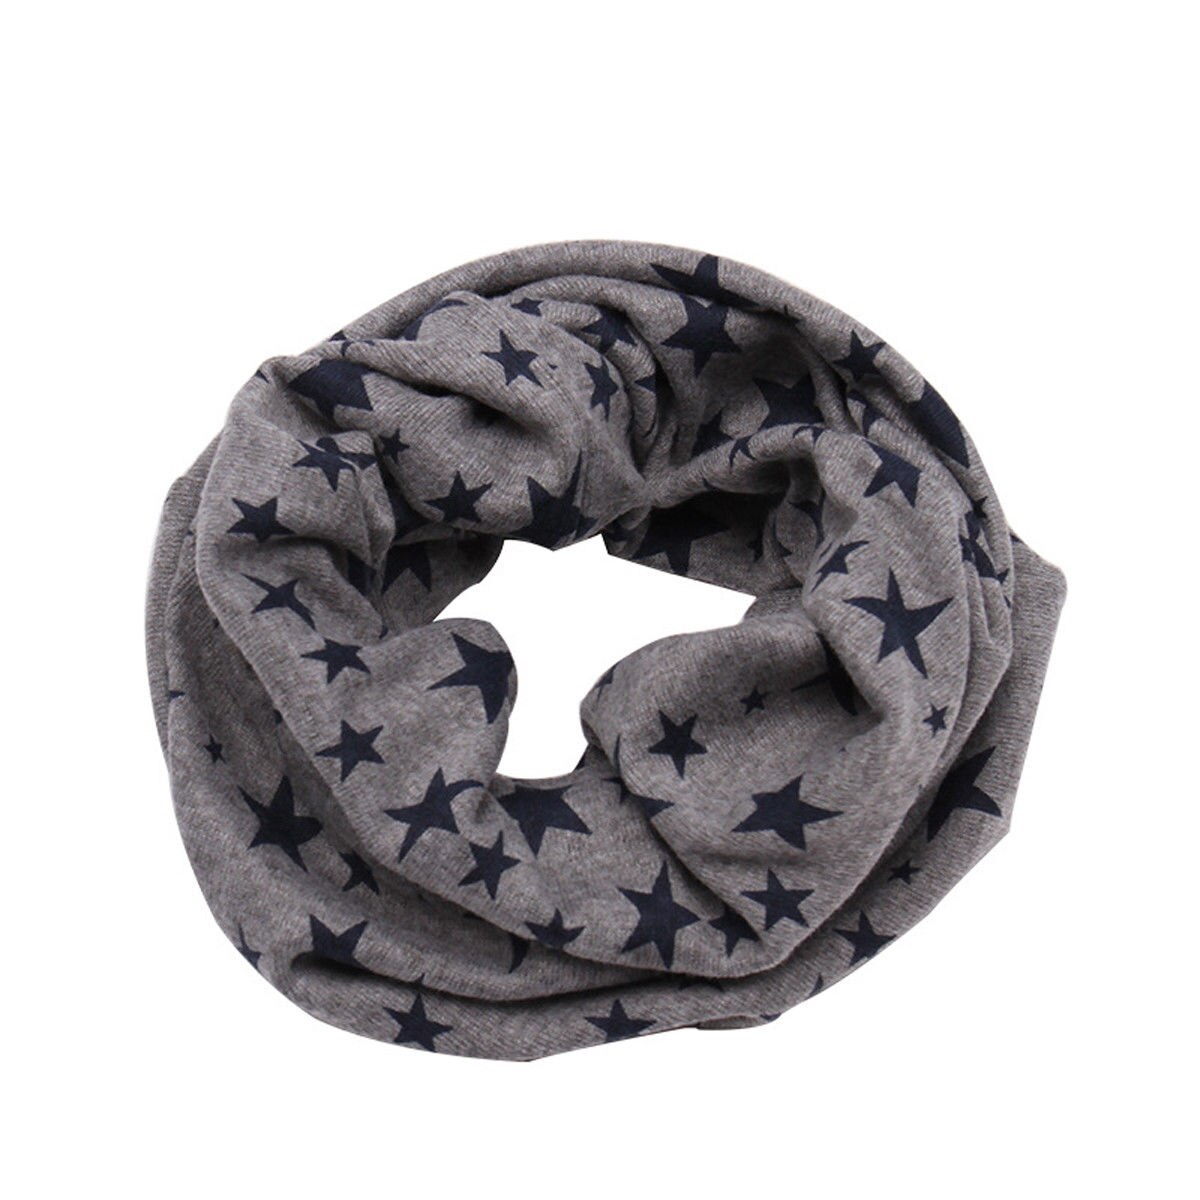 Barn børn vinter varm bomuld snood tørklæde sjal drenge piger hals varm halstørklæde: Grå